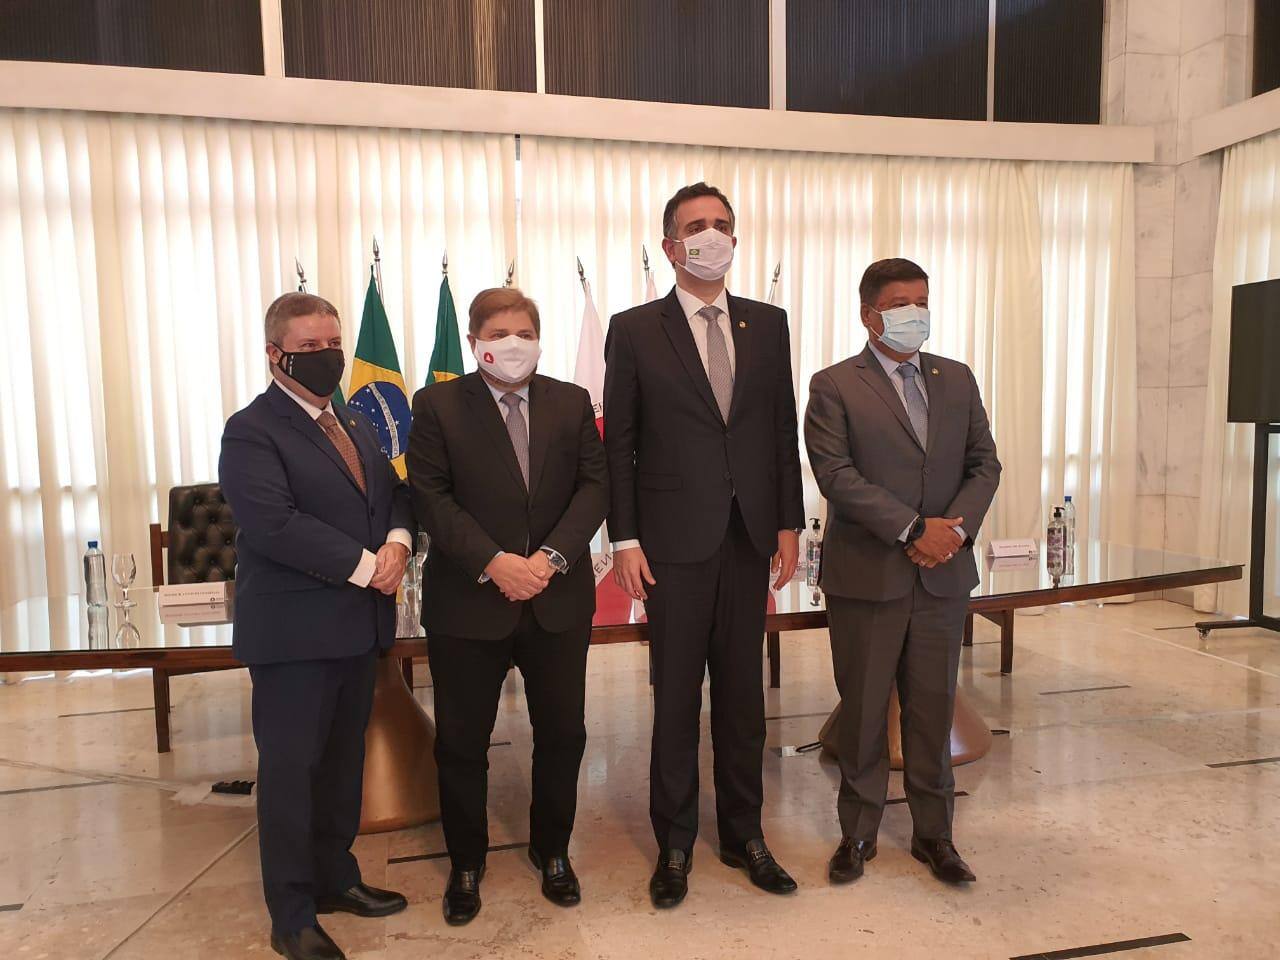 Senadores Antonio Anastasia, Rodrigo Pacheco e Carlos Viana com Agostinho Patrus, presidente da ALMG (2º da es. para dir.)